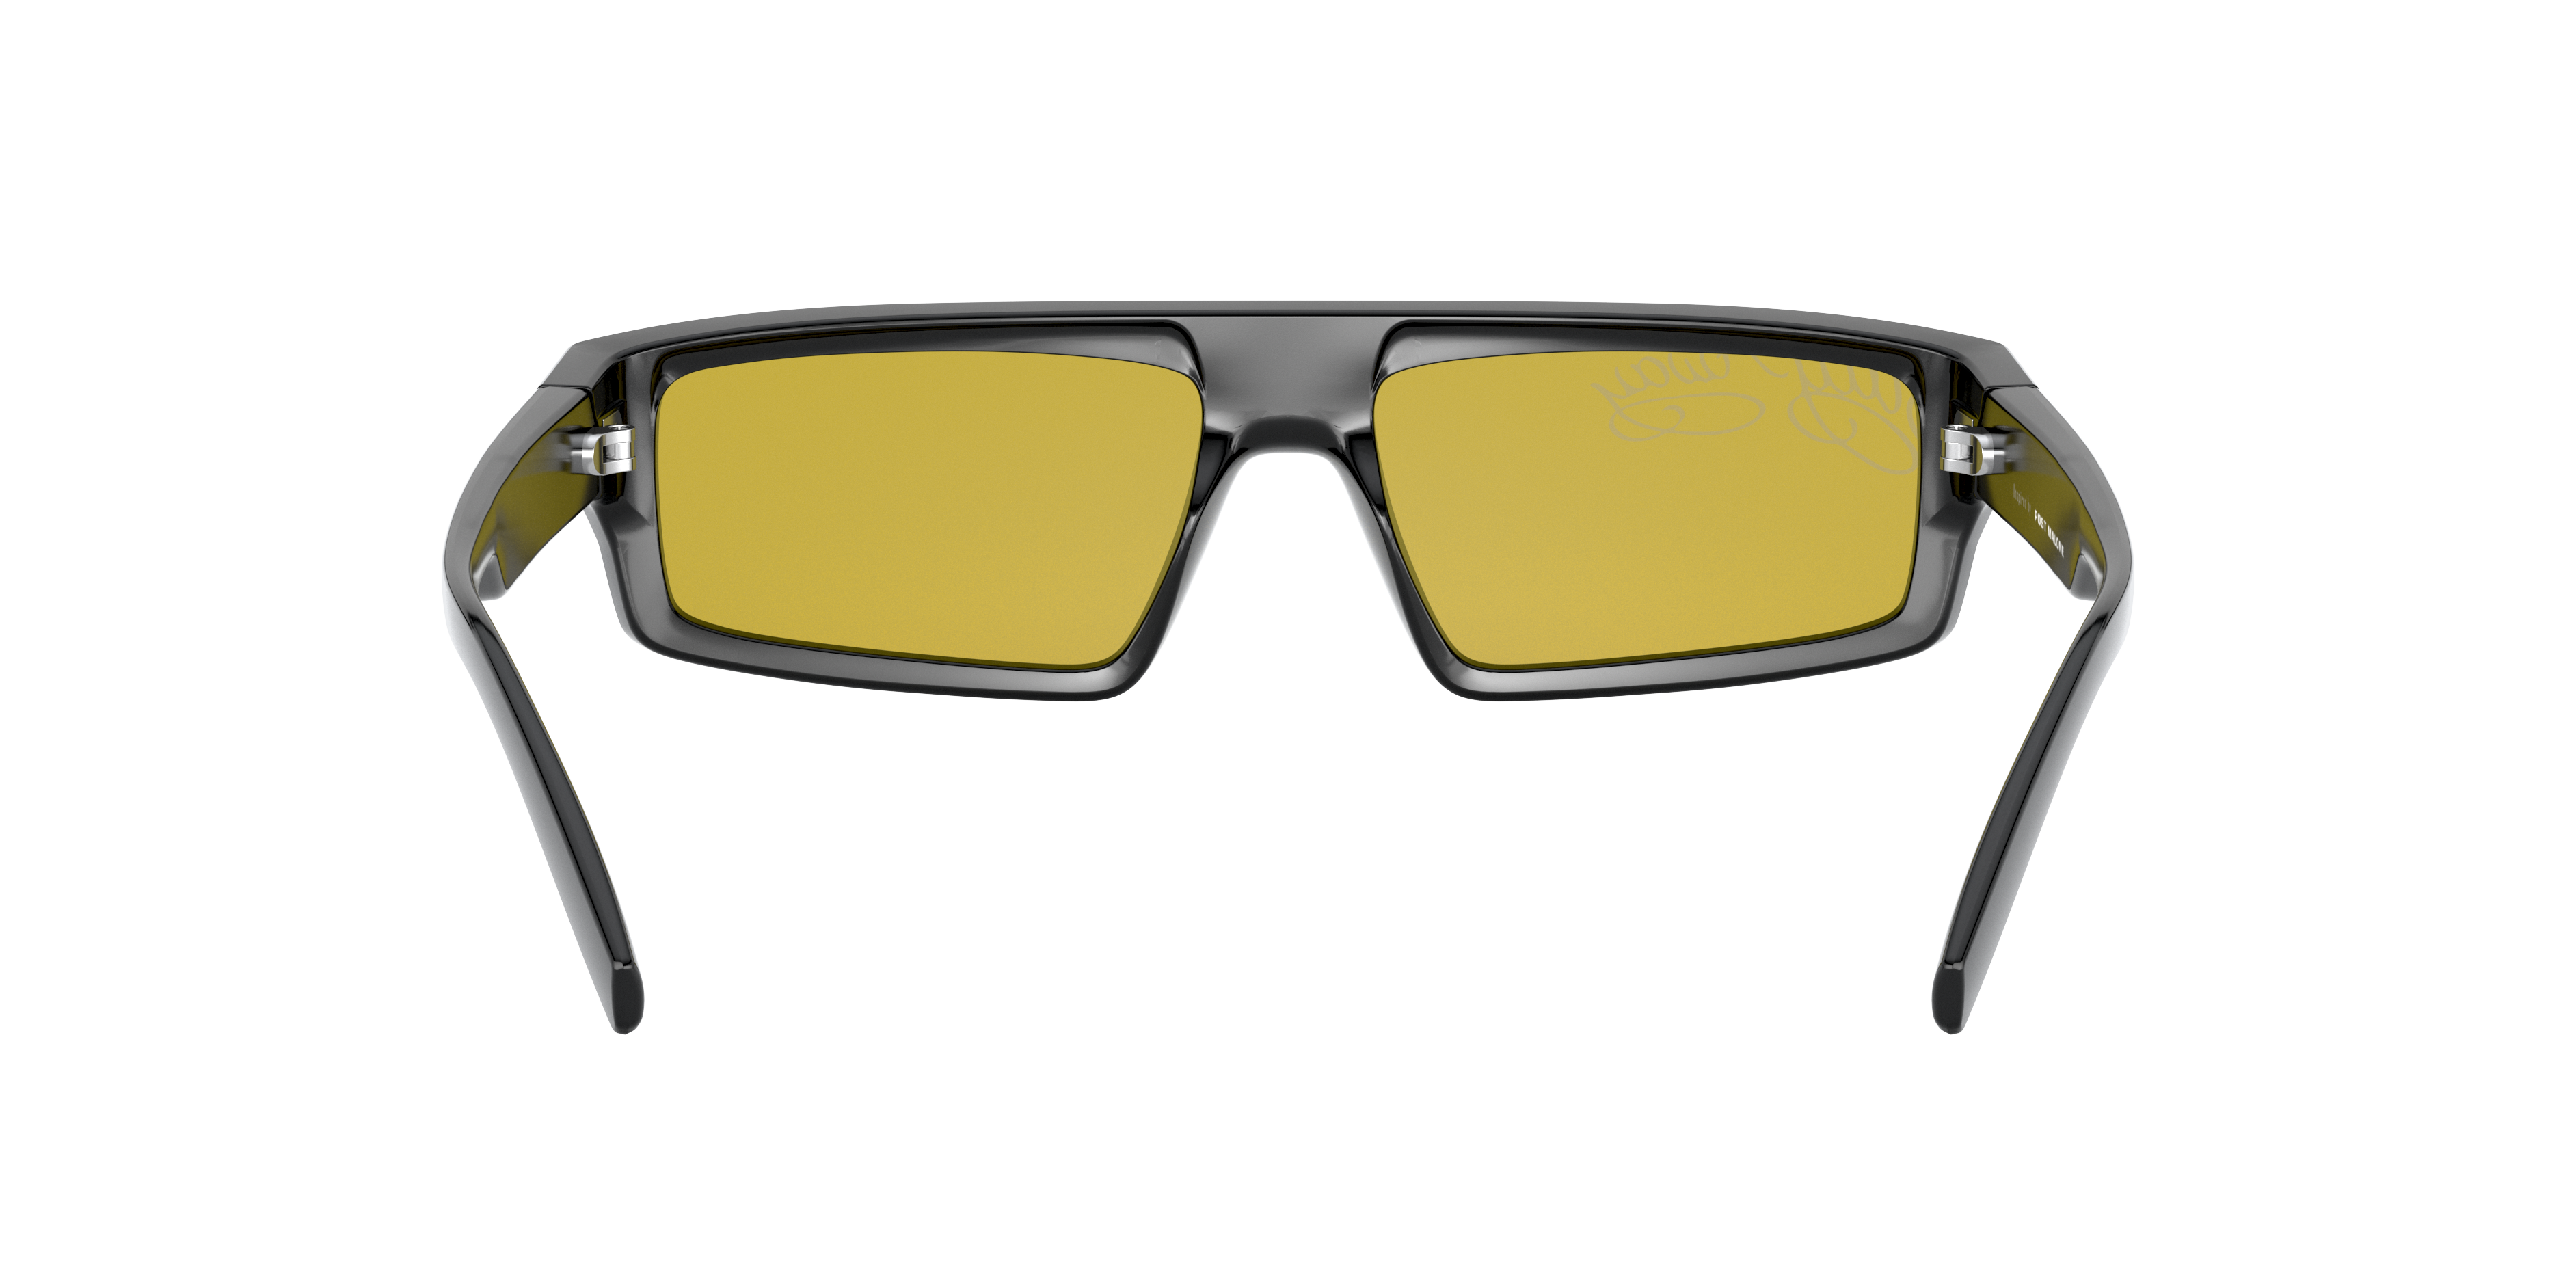 Detail02 Arnette Syke AN 4268 Sunglasses Yellow / Black